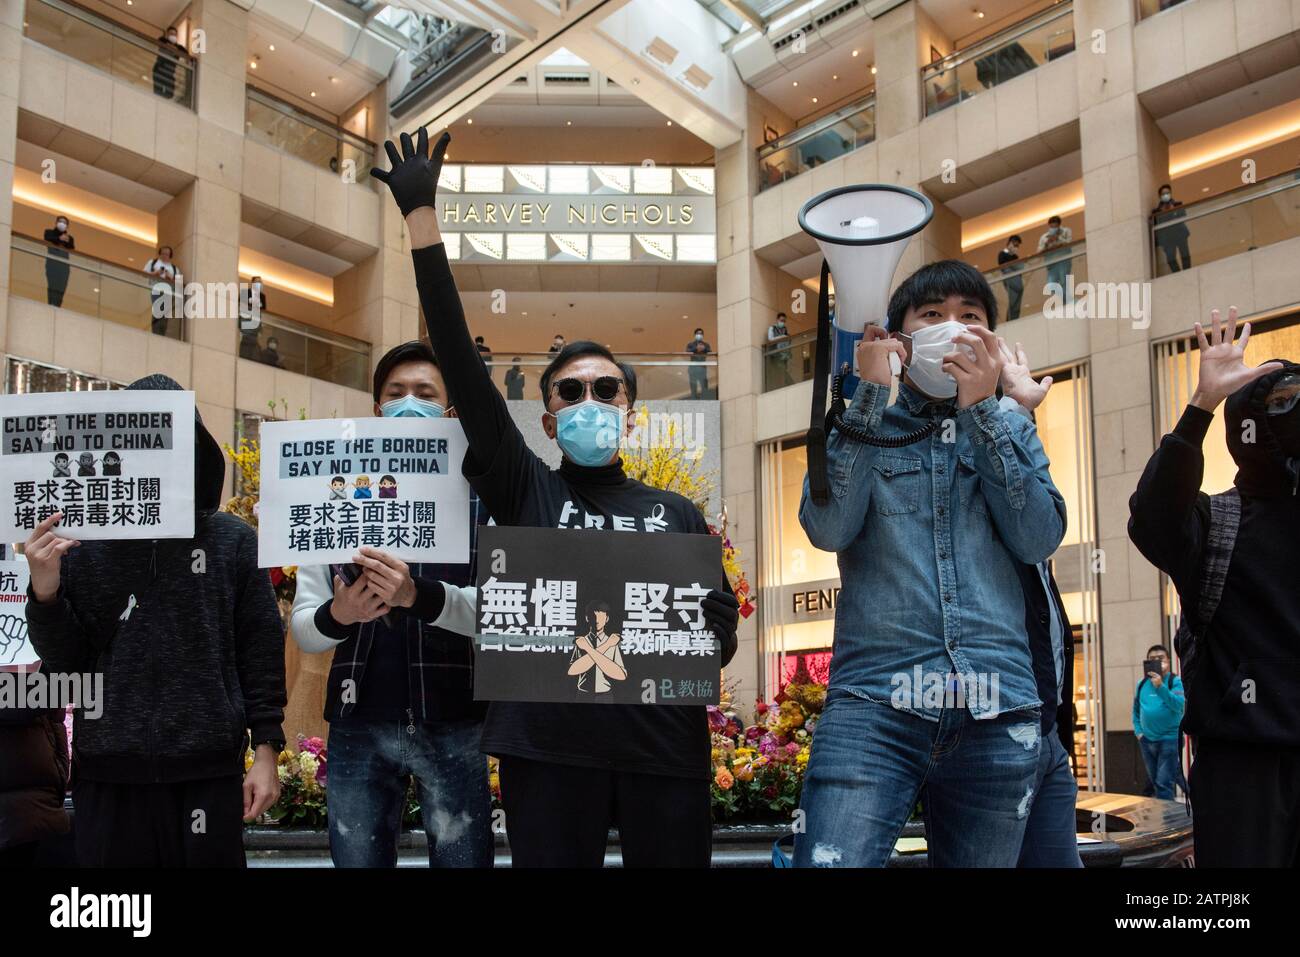 Durante la protesta sono stati compiuti dei gesti dimostranti.Decine di dimostranti hanno protestato presso il centro commerciale Landmark di Central chiedendo al governo di Hong Kong di chiudere tutti i confini di Hong Kong, collegandosi con la Cina continentale, per controllare che il letale virus Corona si diffonda a Hong Kong. Foto Stock